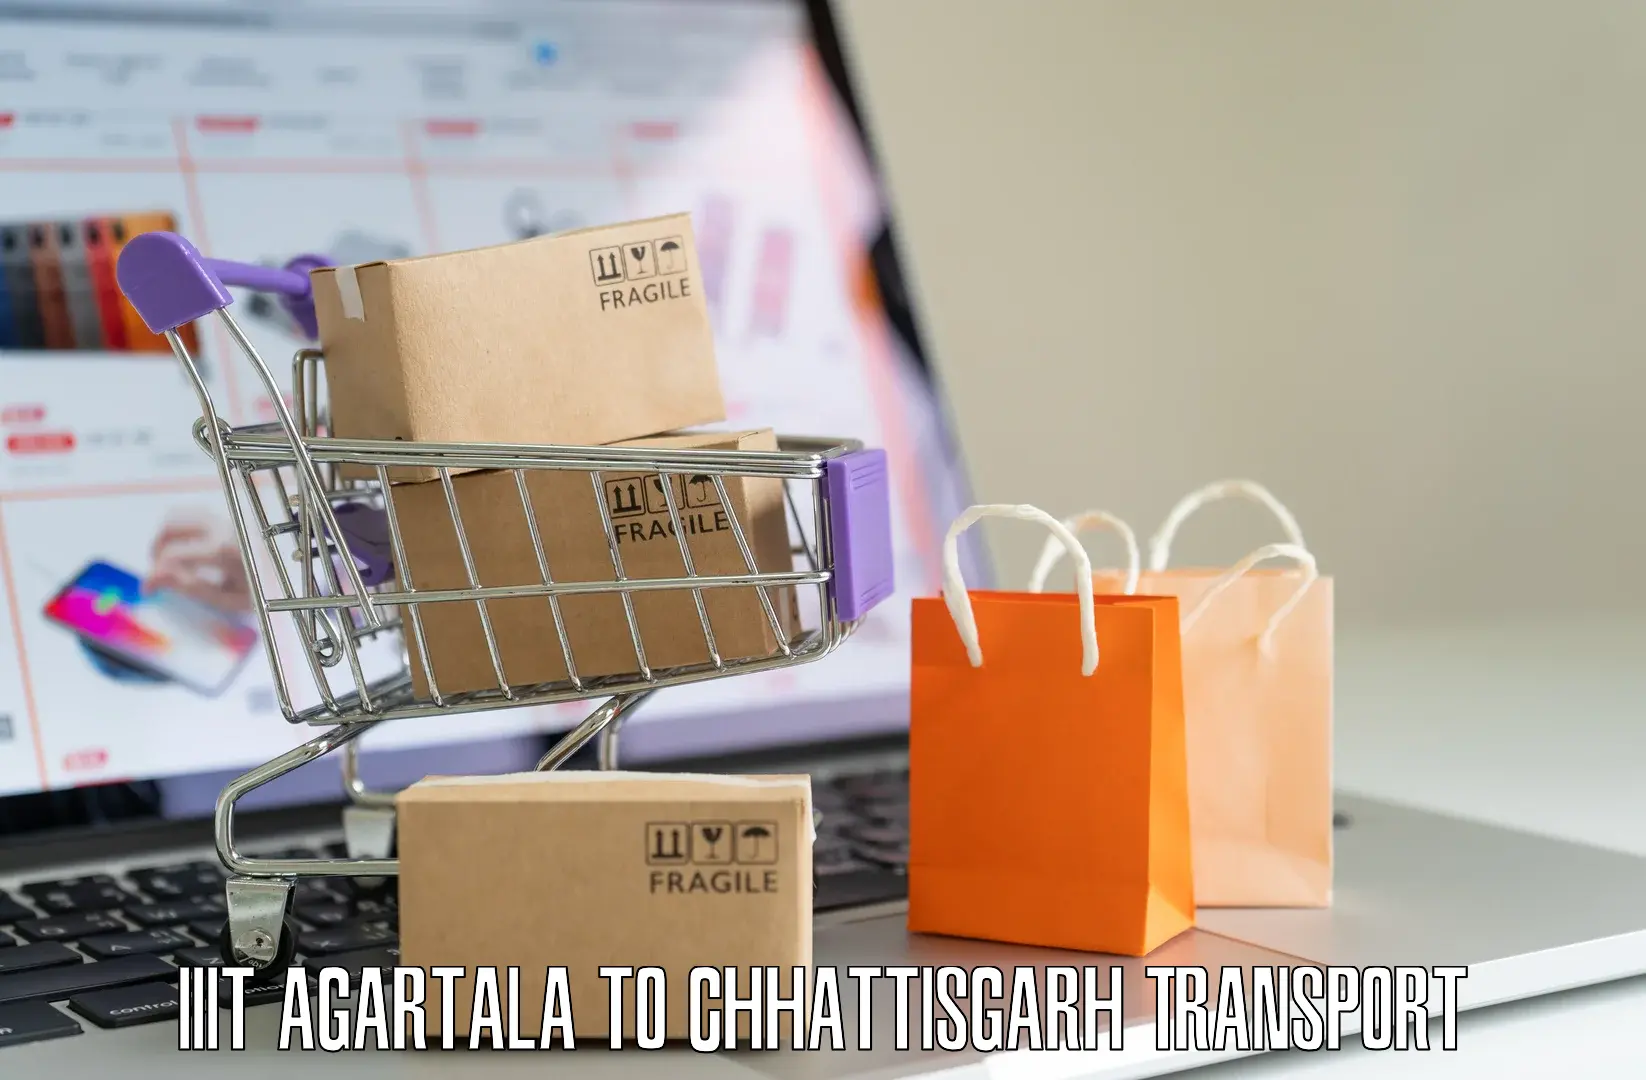 Online transport service IIIT Agartala to Patna Chhattisgarh